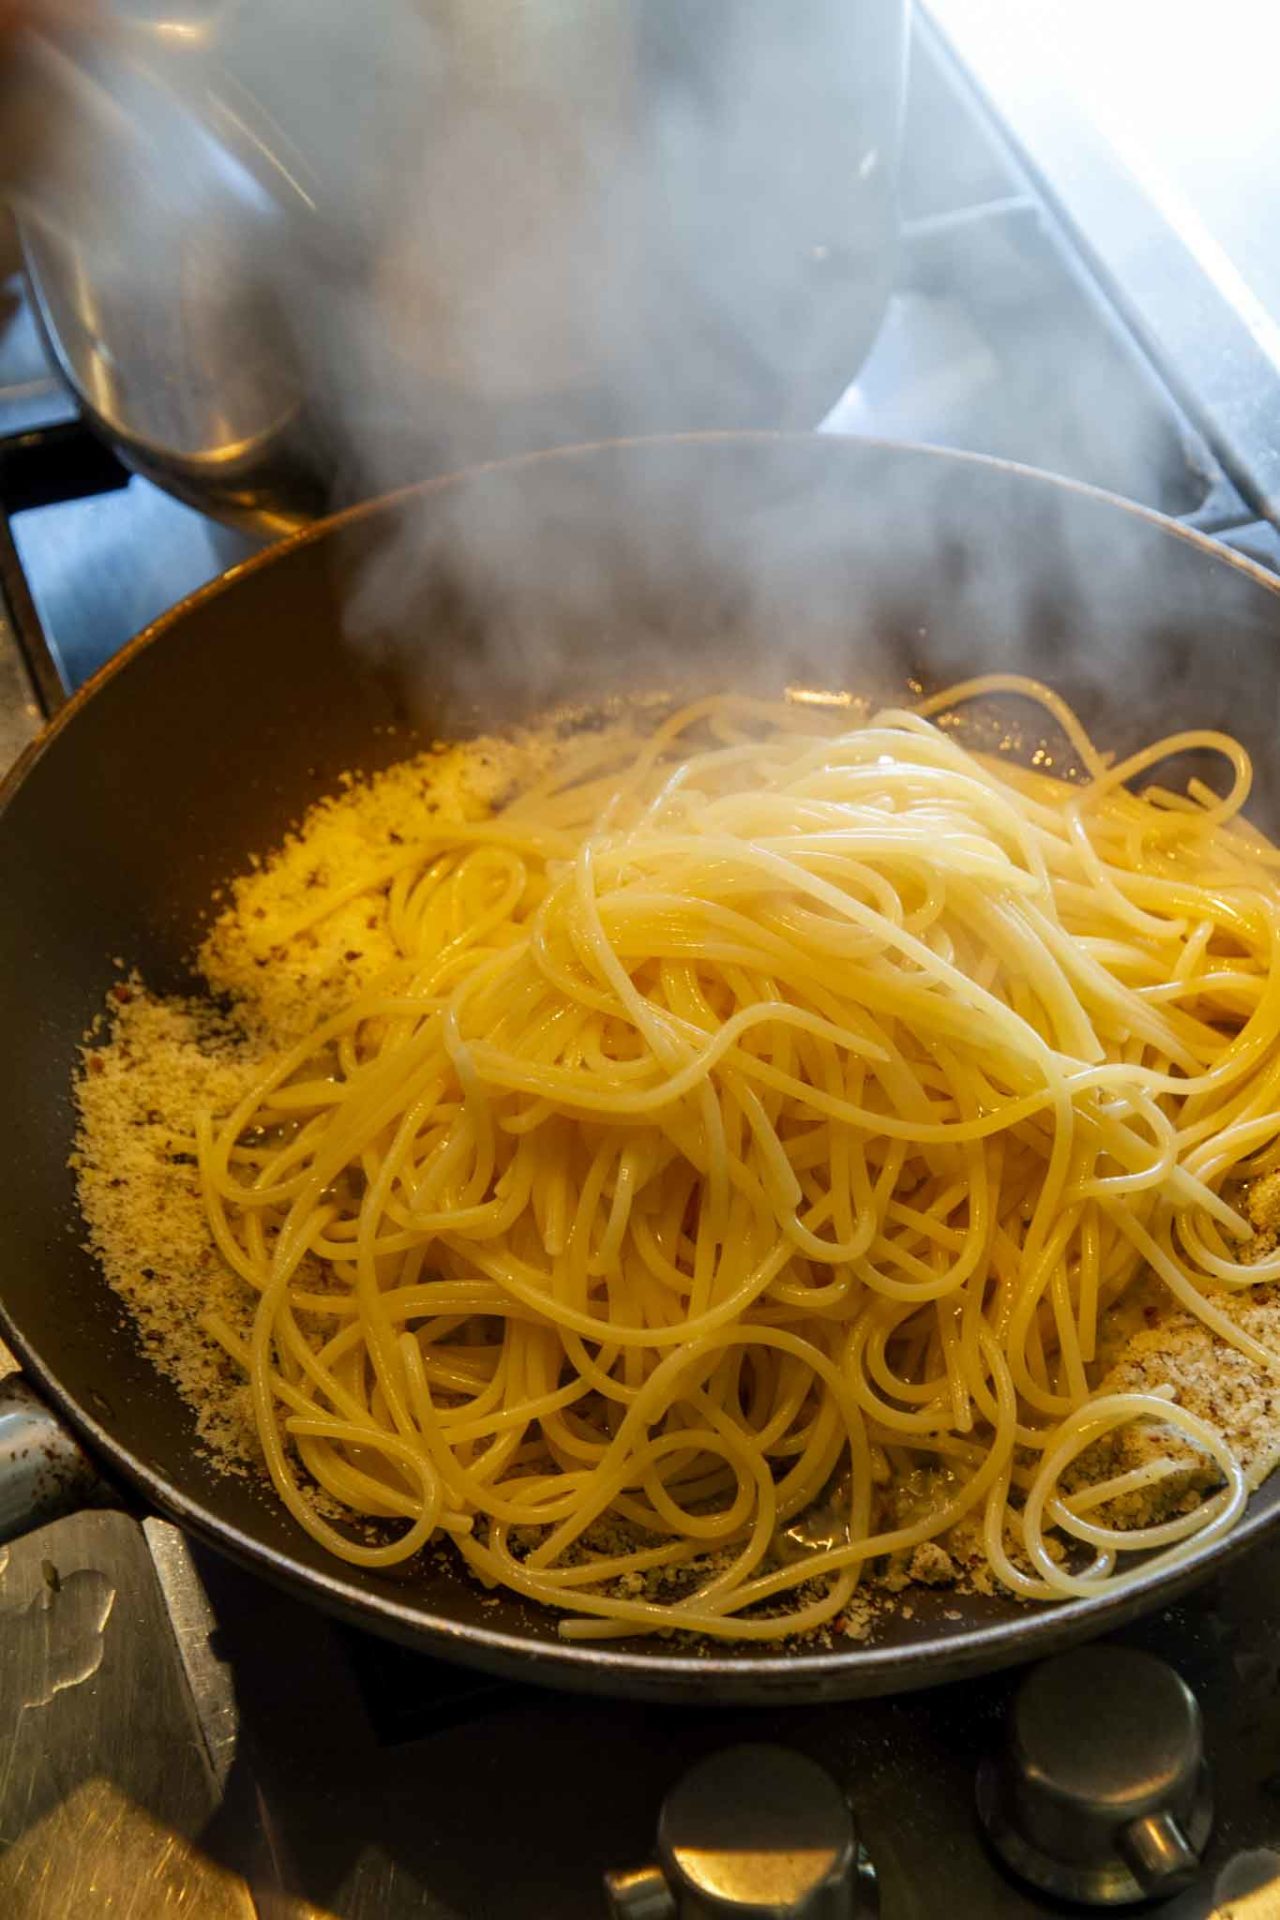 spaghetti cacio e pepe